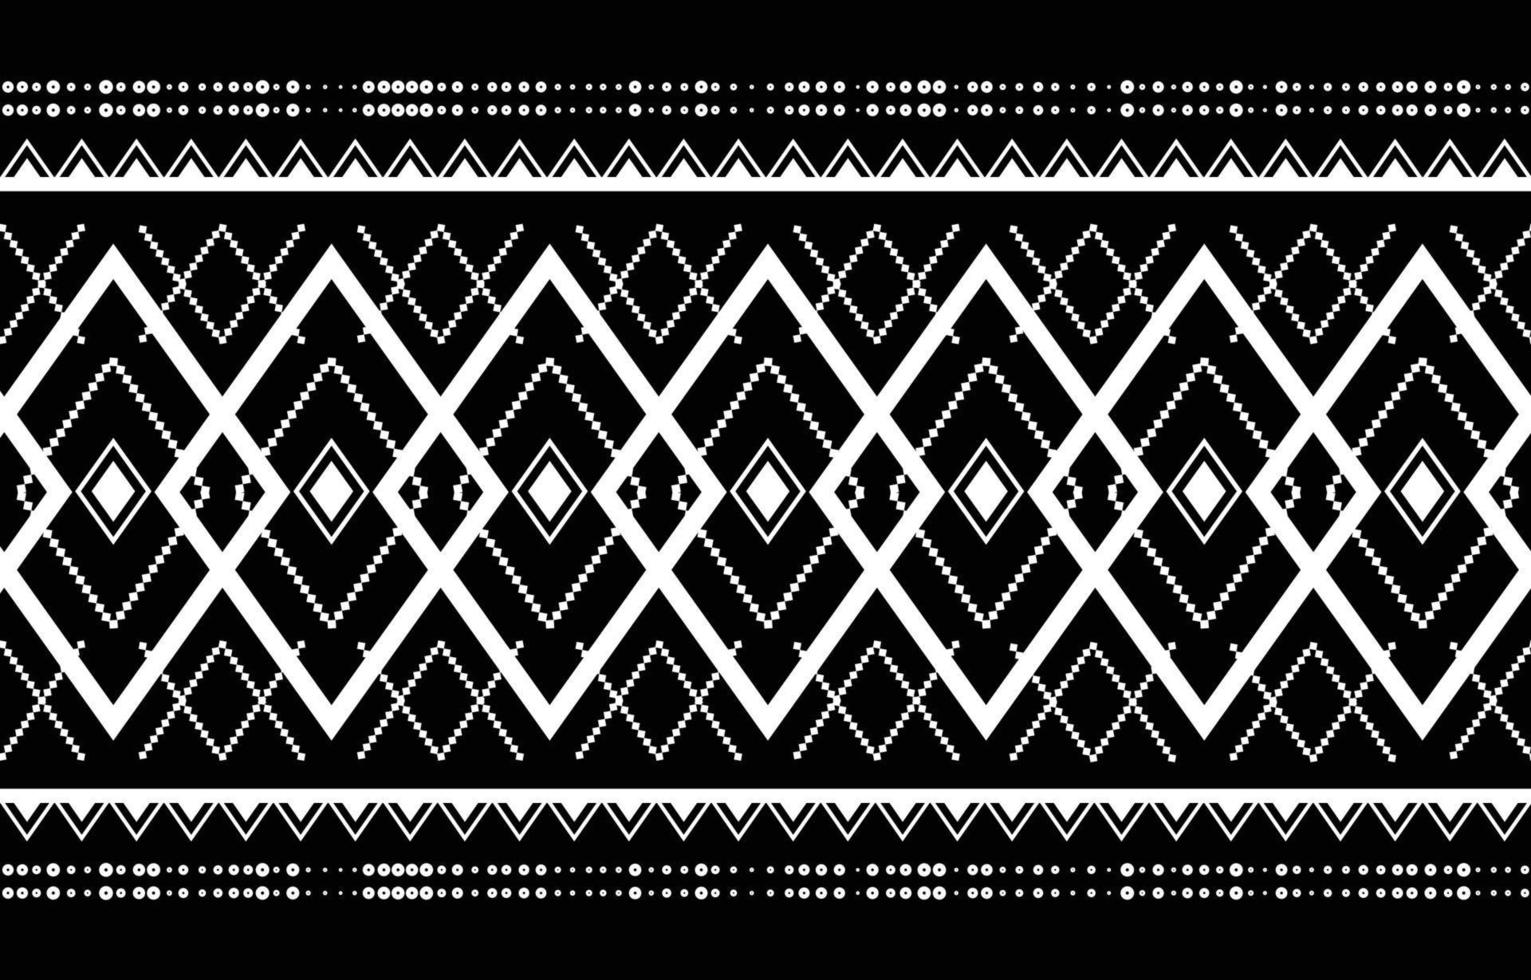 etnische abstracte ikat-patroonontwerpen voor achtergronden of wallpapers, tapijten, batik, traditionele textiel inheemse patronen. vector illustratie